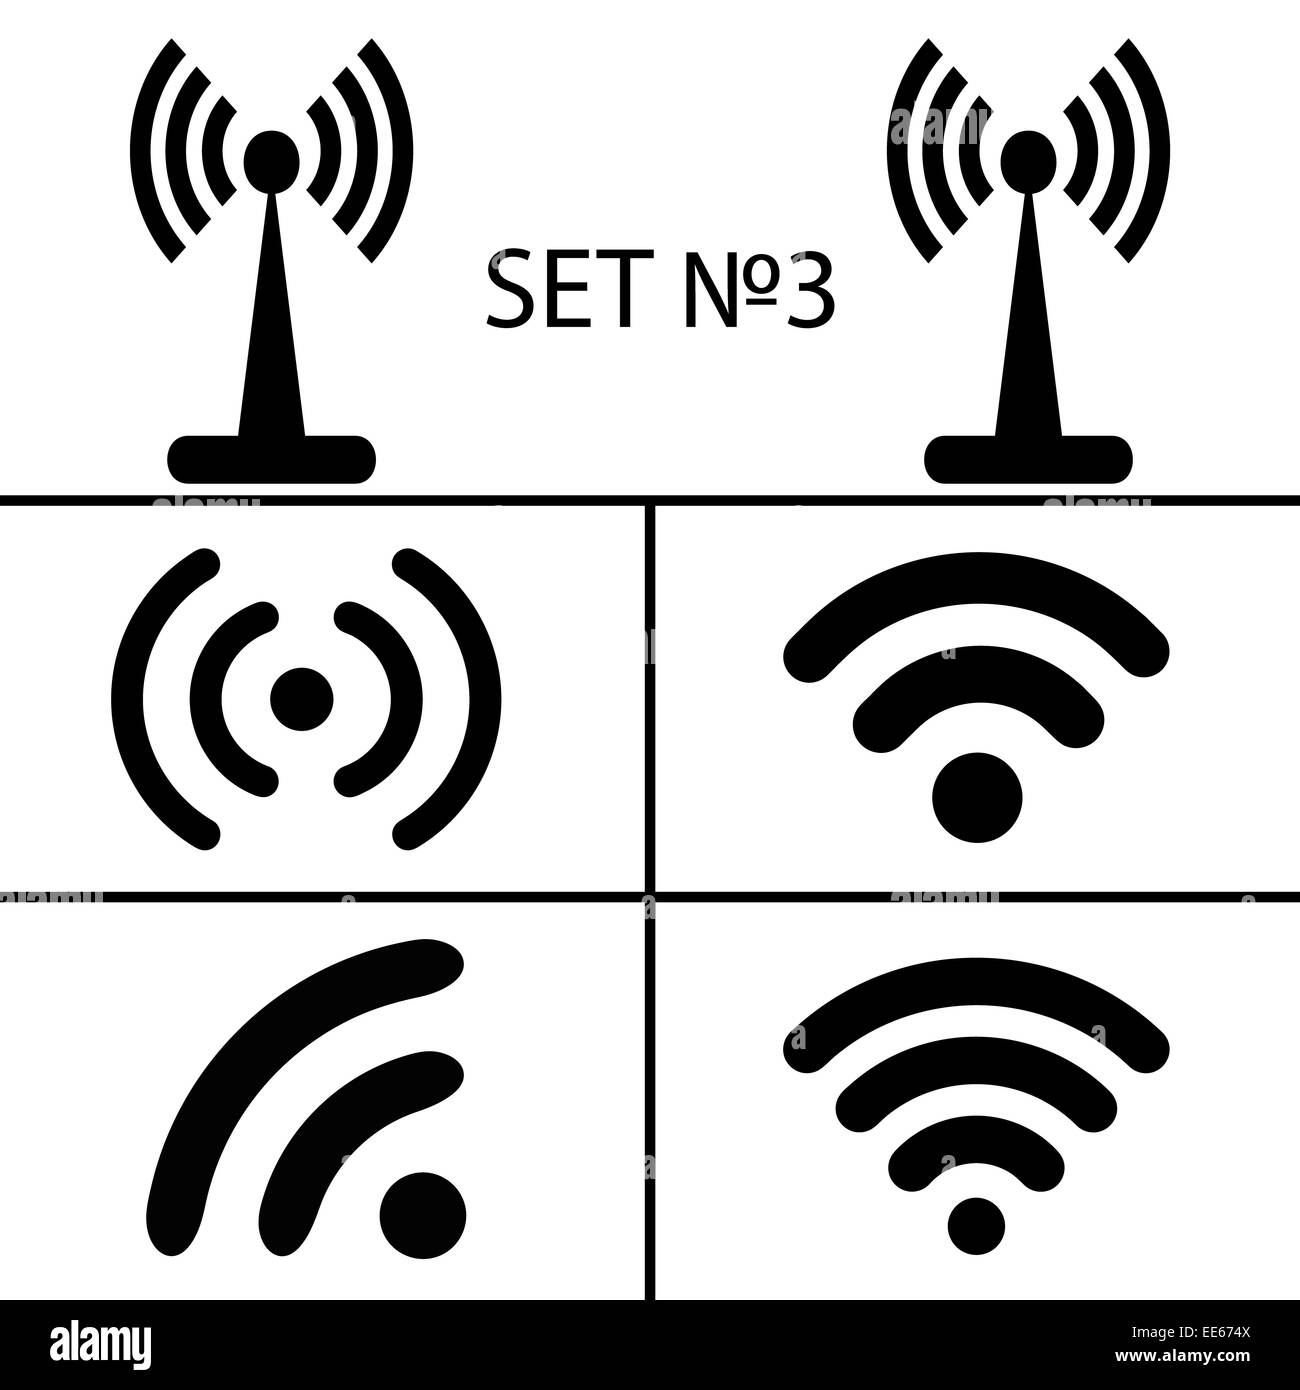 Set 3. Vierzehn verschiedene schwarze Wireless und WLAN-Symbole für remote-Zugriff-Kommunikation über Radiowellen. Vektor-Illustration EPS10 Stockfoto